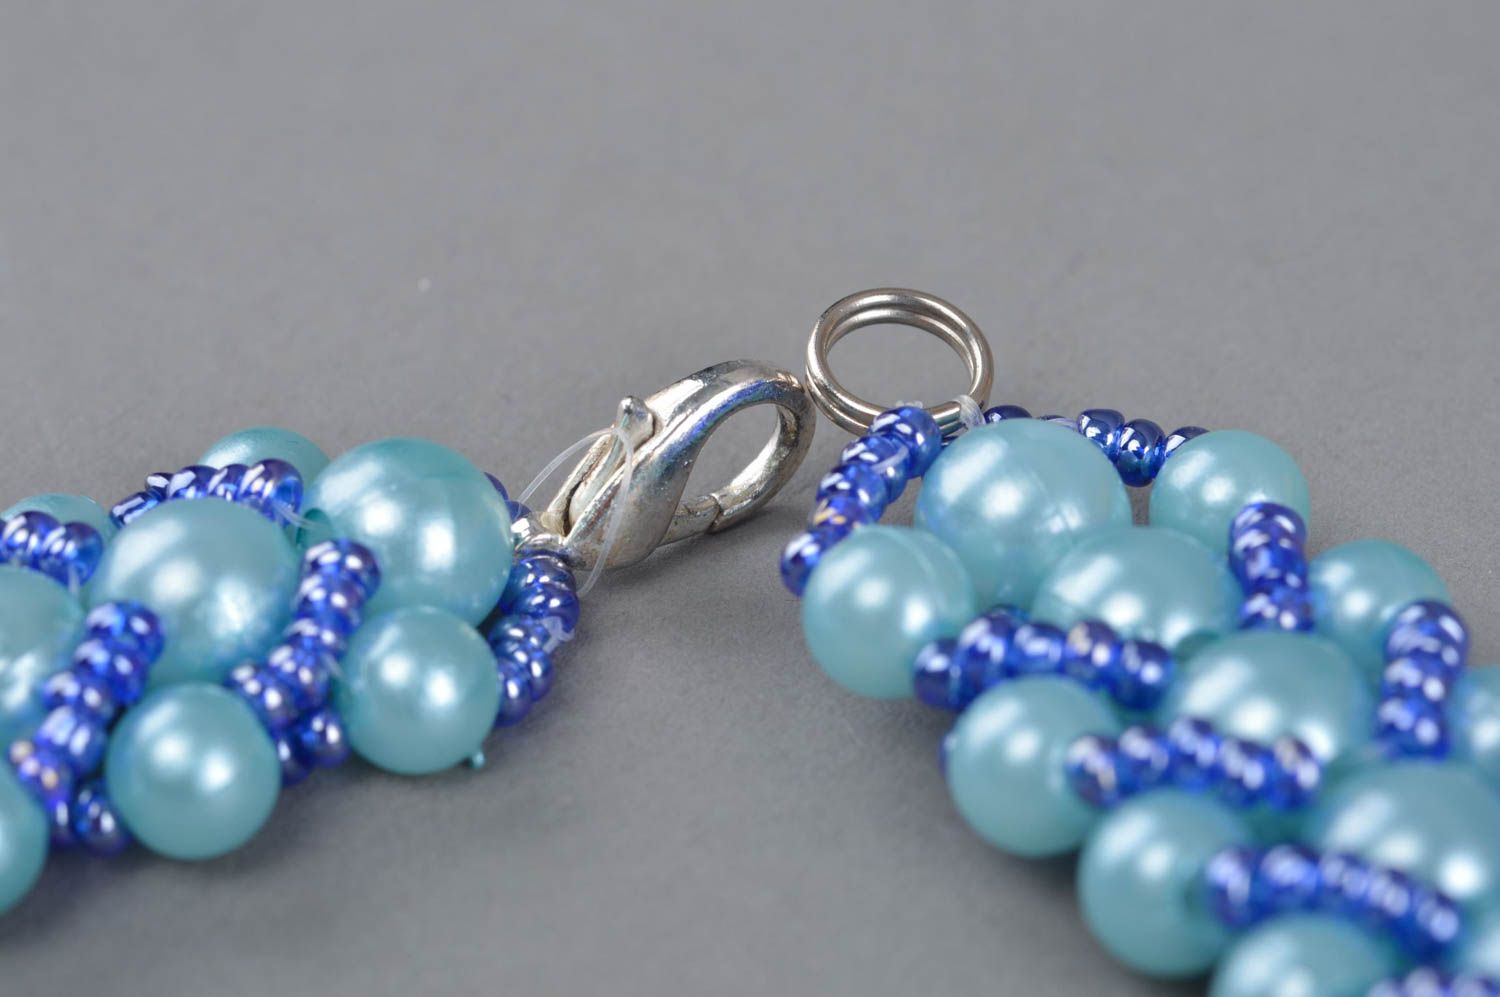 Ожерелье из бисера и бусин ручной работы в голубых тонах красивое авторское фото 4